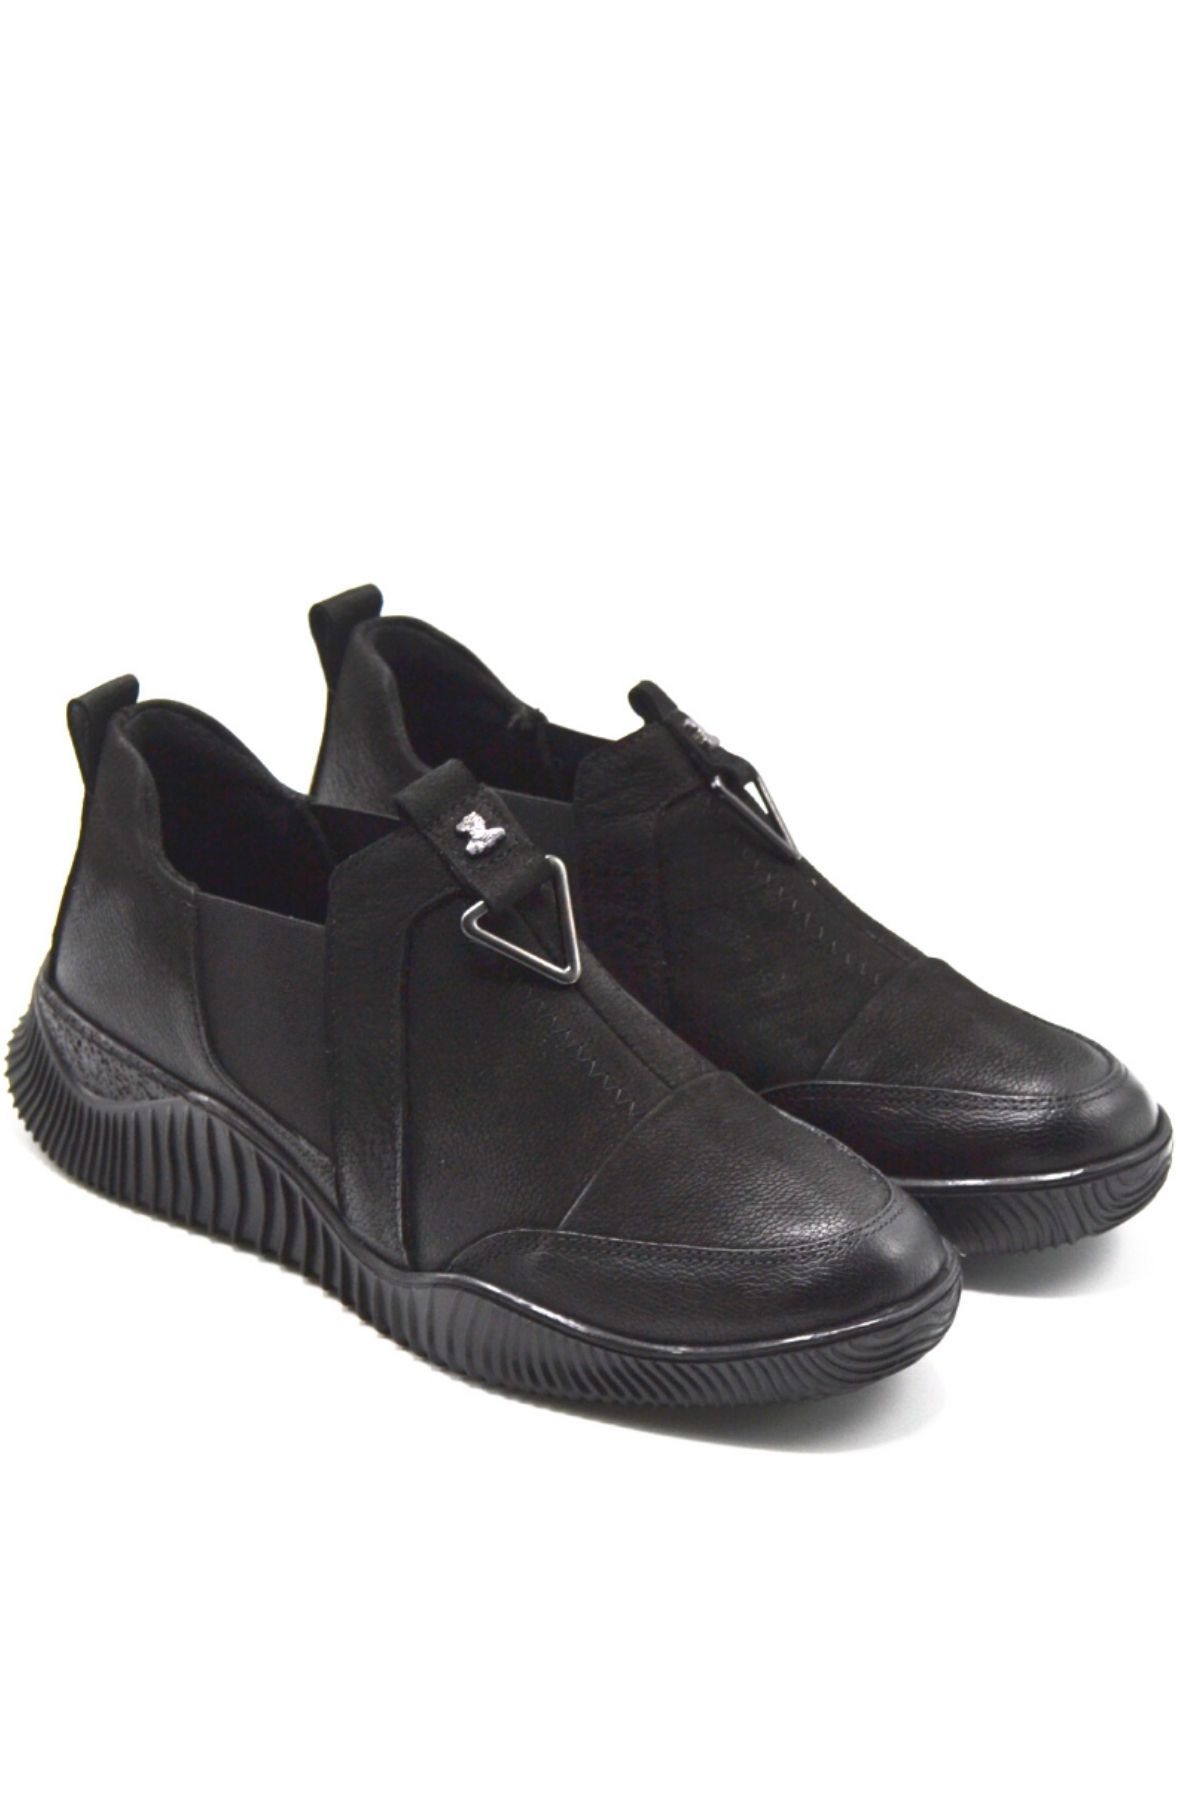 Kadın Comfort Deri Ayakkabı Siyah 1953840K